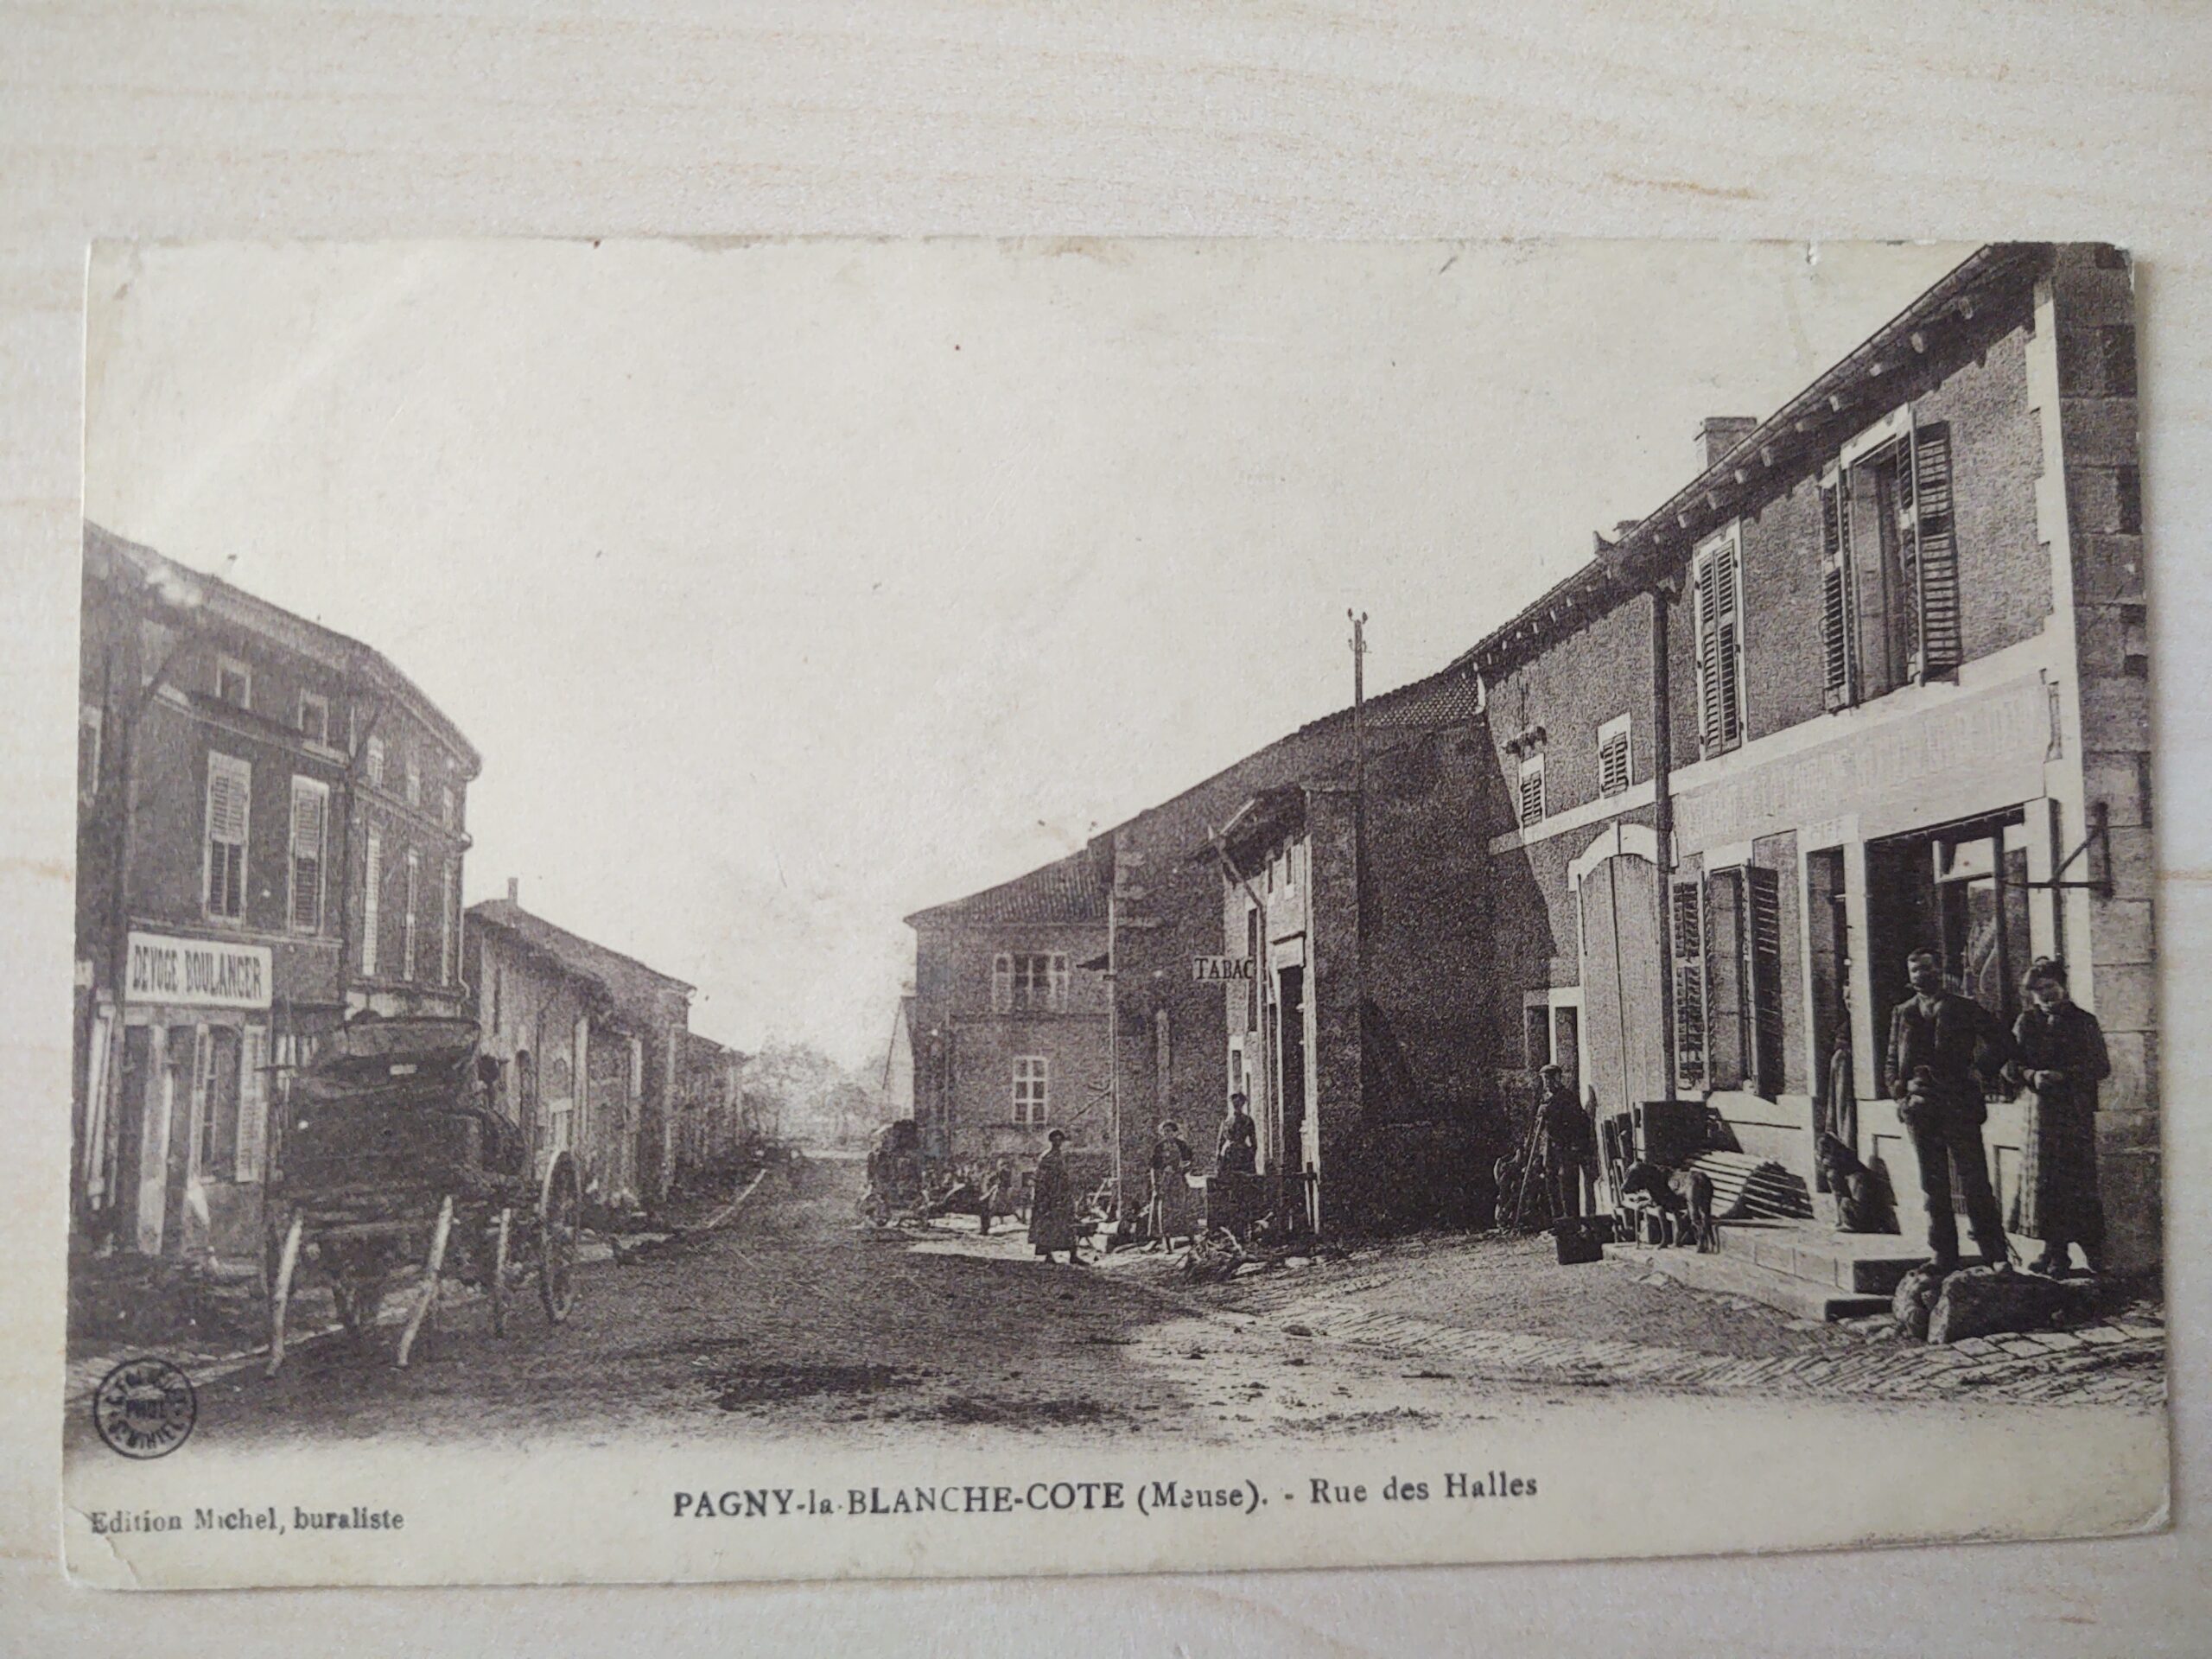 Carte postale avec un commerce - boulangerie Devoge à Pagny-la-Blanche-Cote